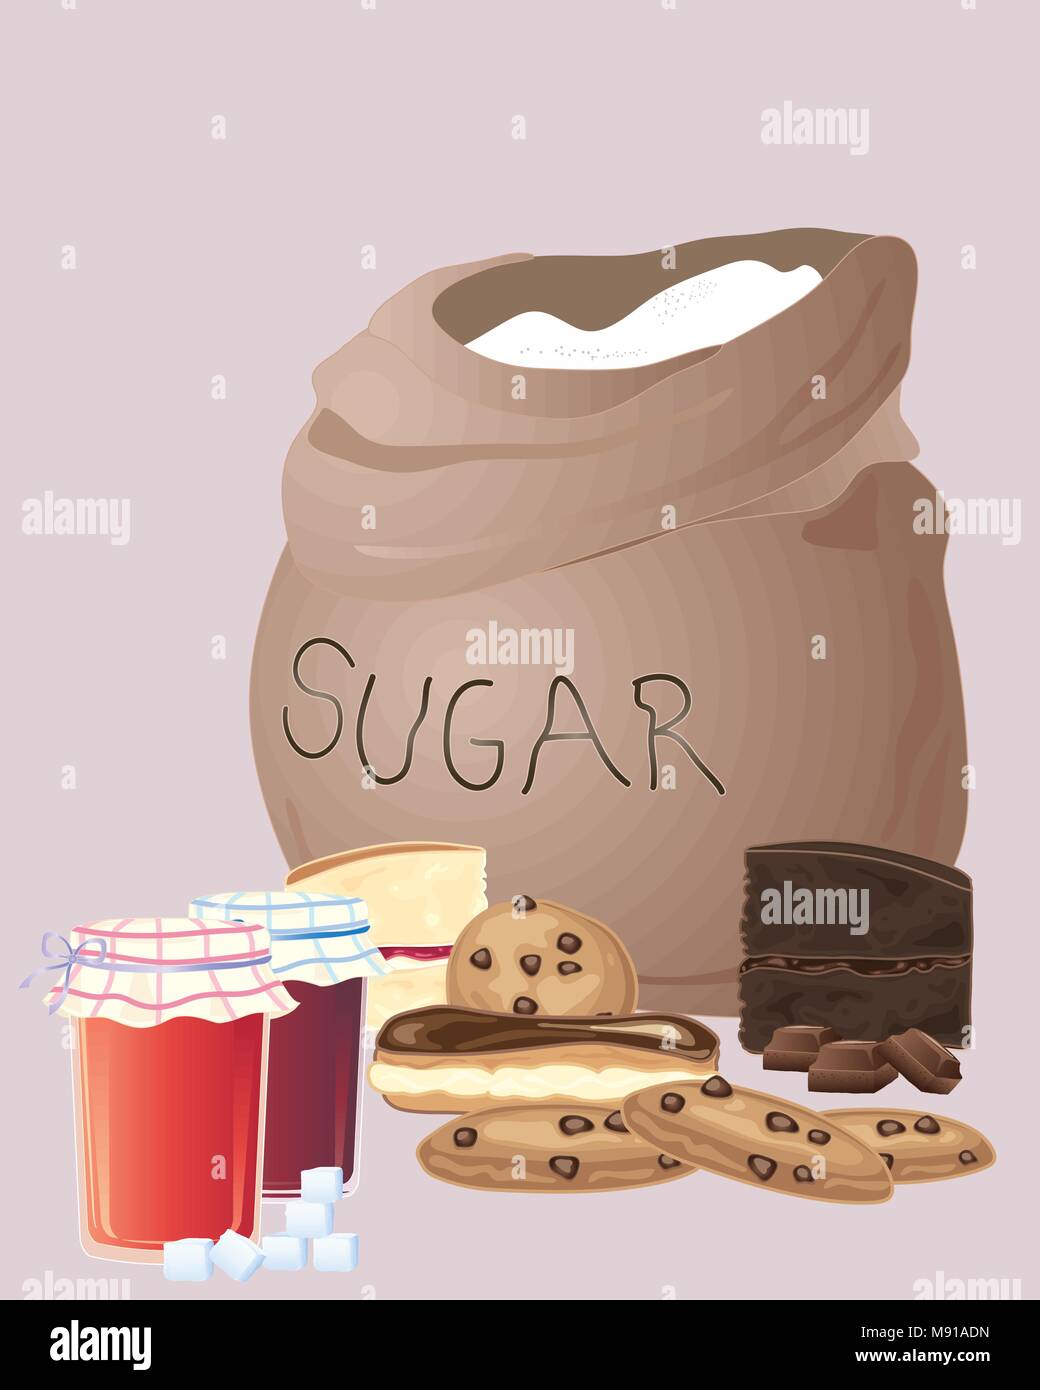 Un vecteur illustration en eps 10 format d'un sac de sucre avec un groupe de gâteaux confitures et des cookies sur un fond brun Illustration de Vecteur